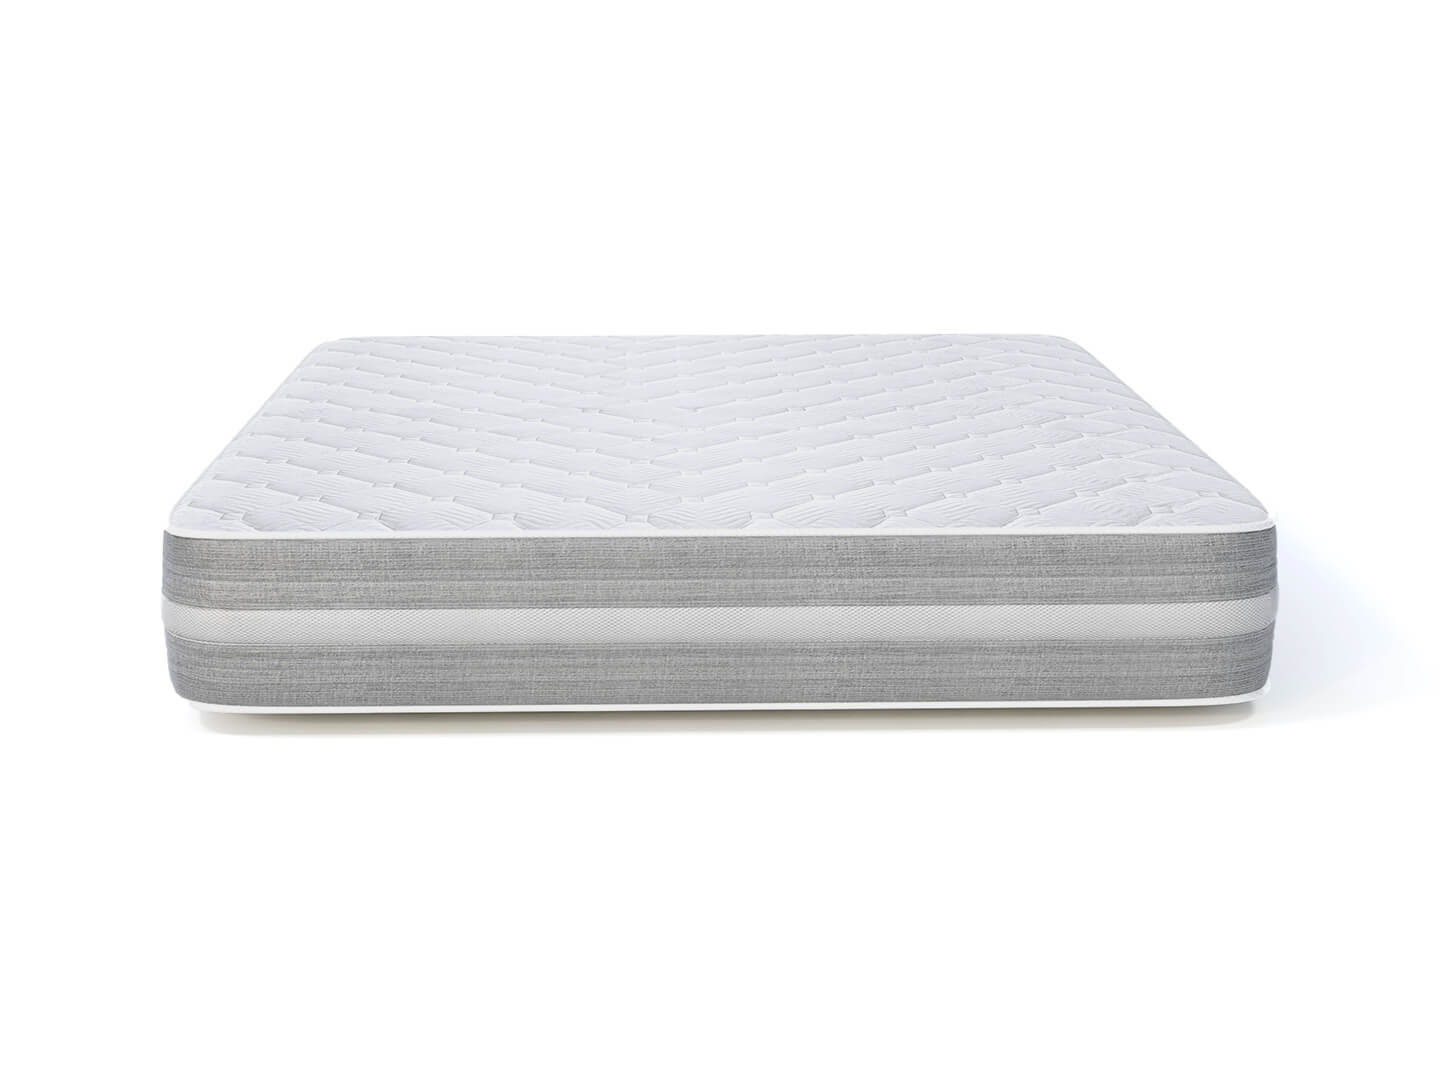 memory foam mattress 27 cm thick - Lux Furniture